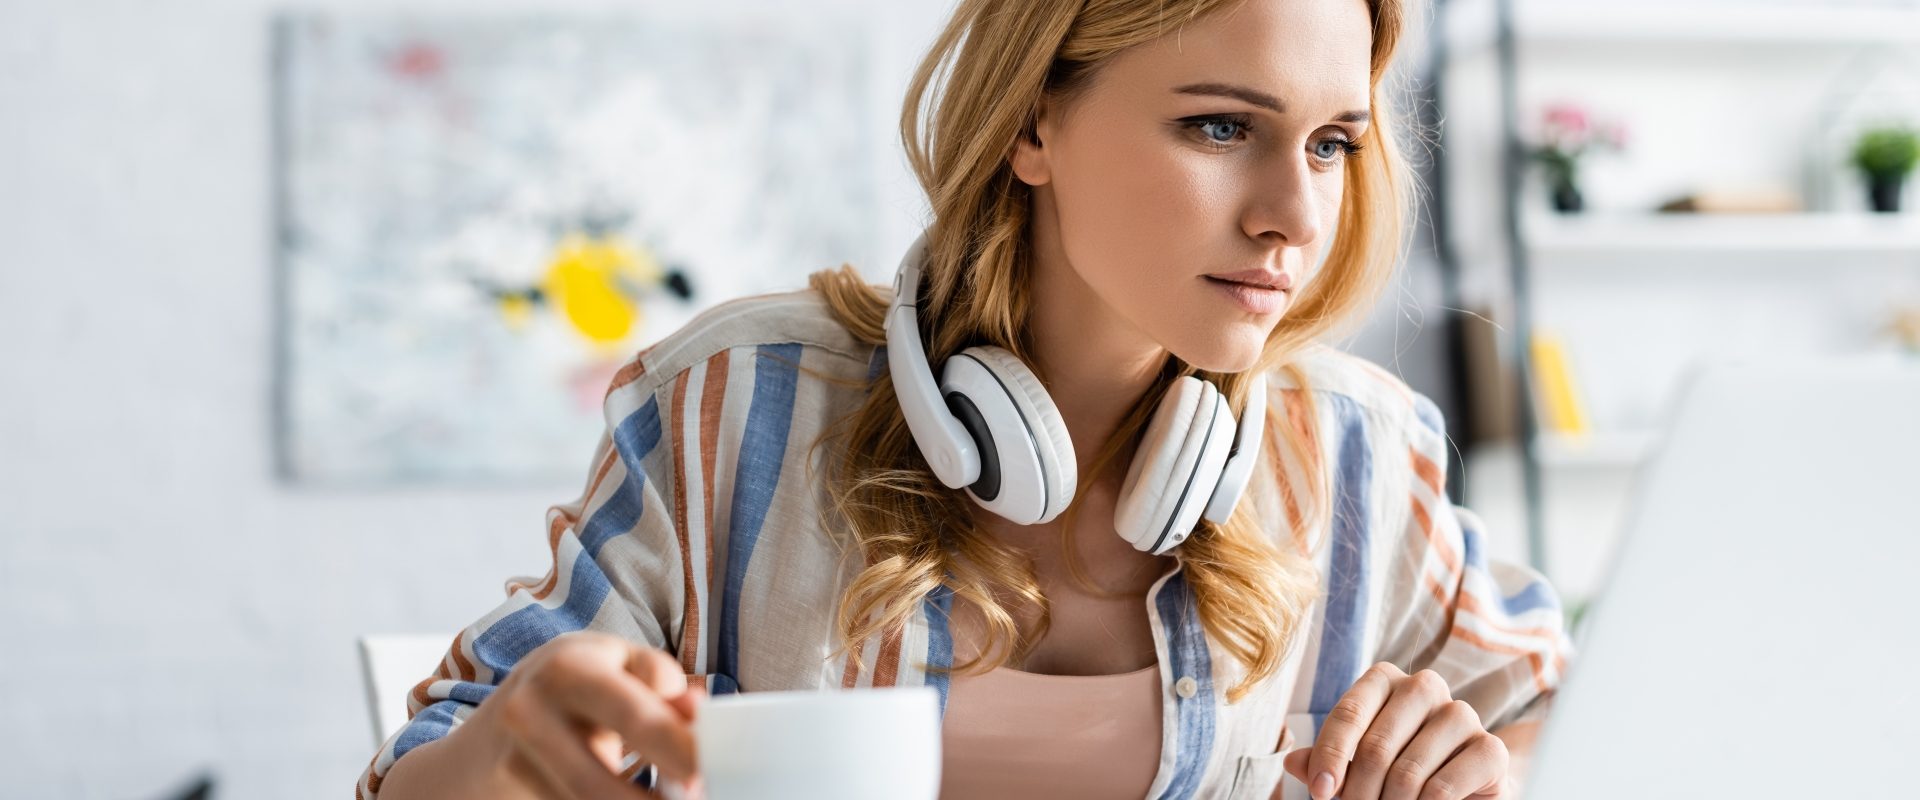 Problemy z koncentracją - jak poprawić zdolność skupienia uwagi? Młoda kobieta siedzi z kubkiem kawy przy komputerze.